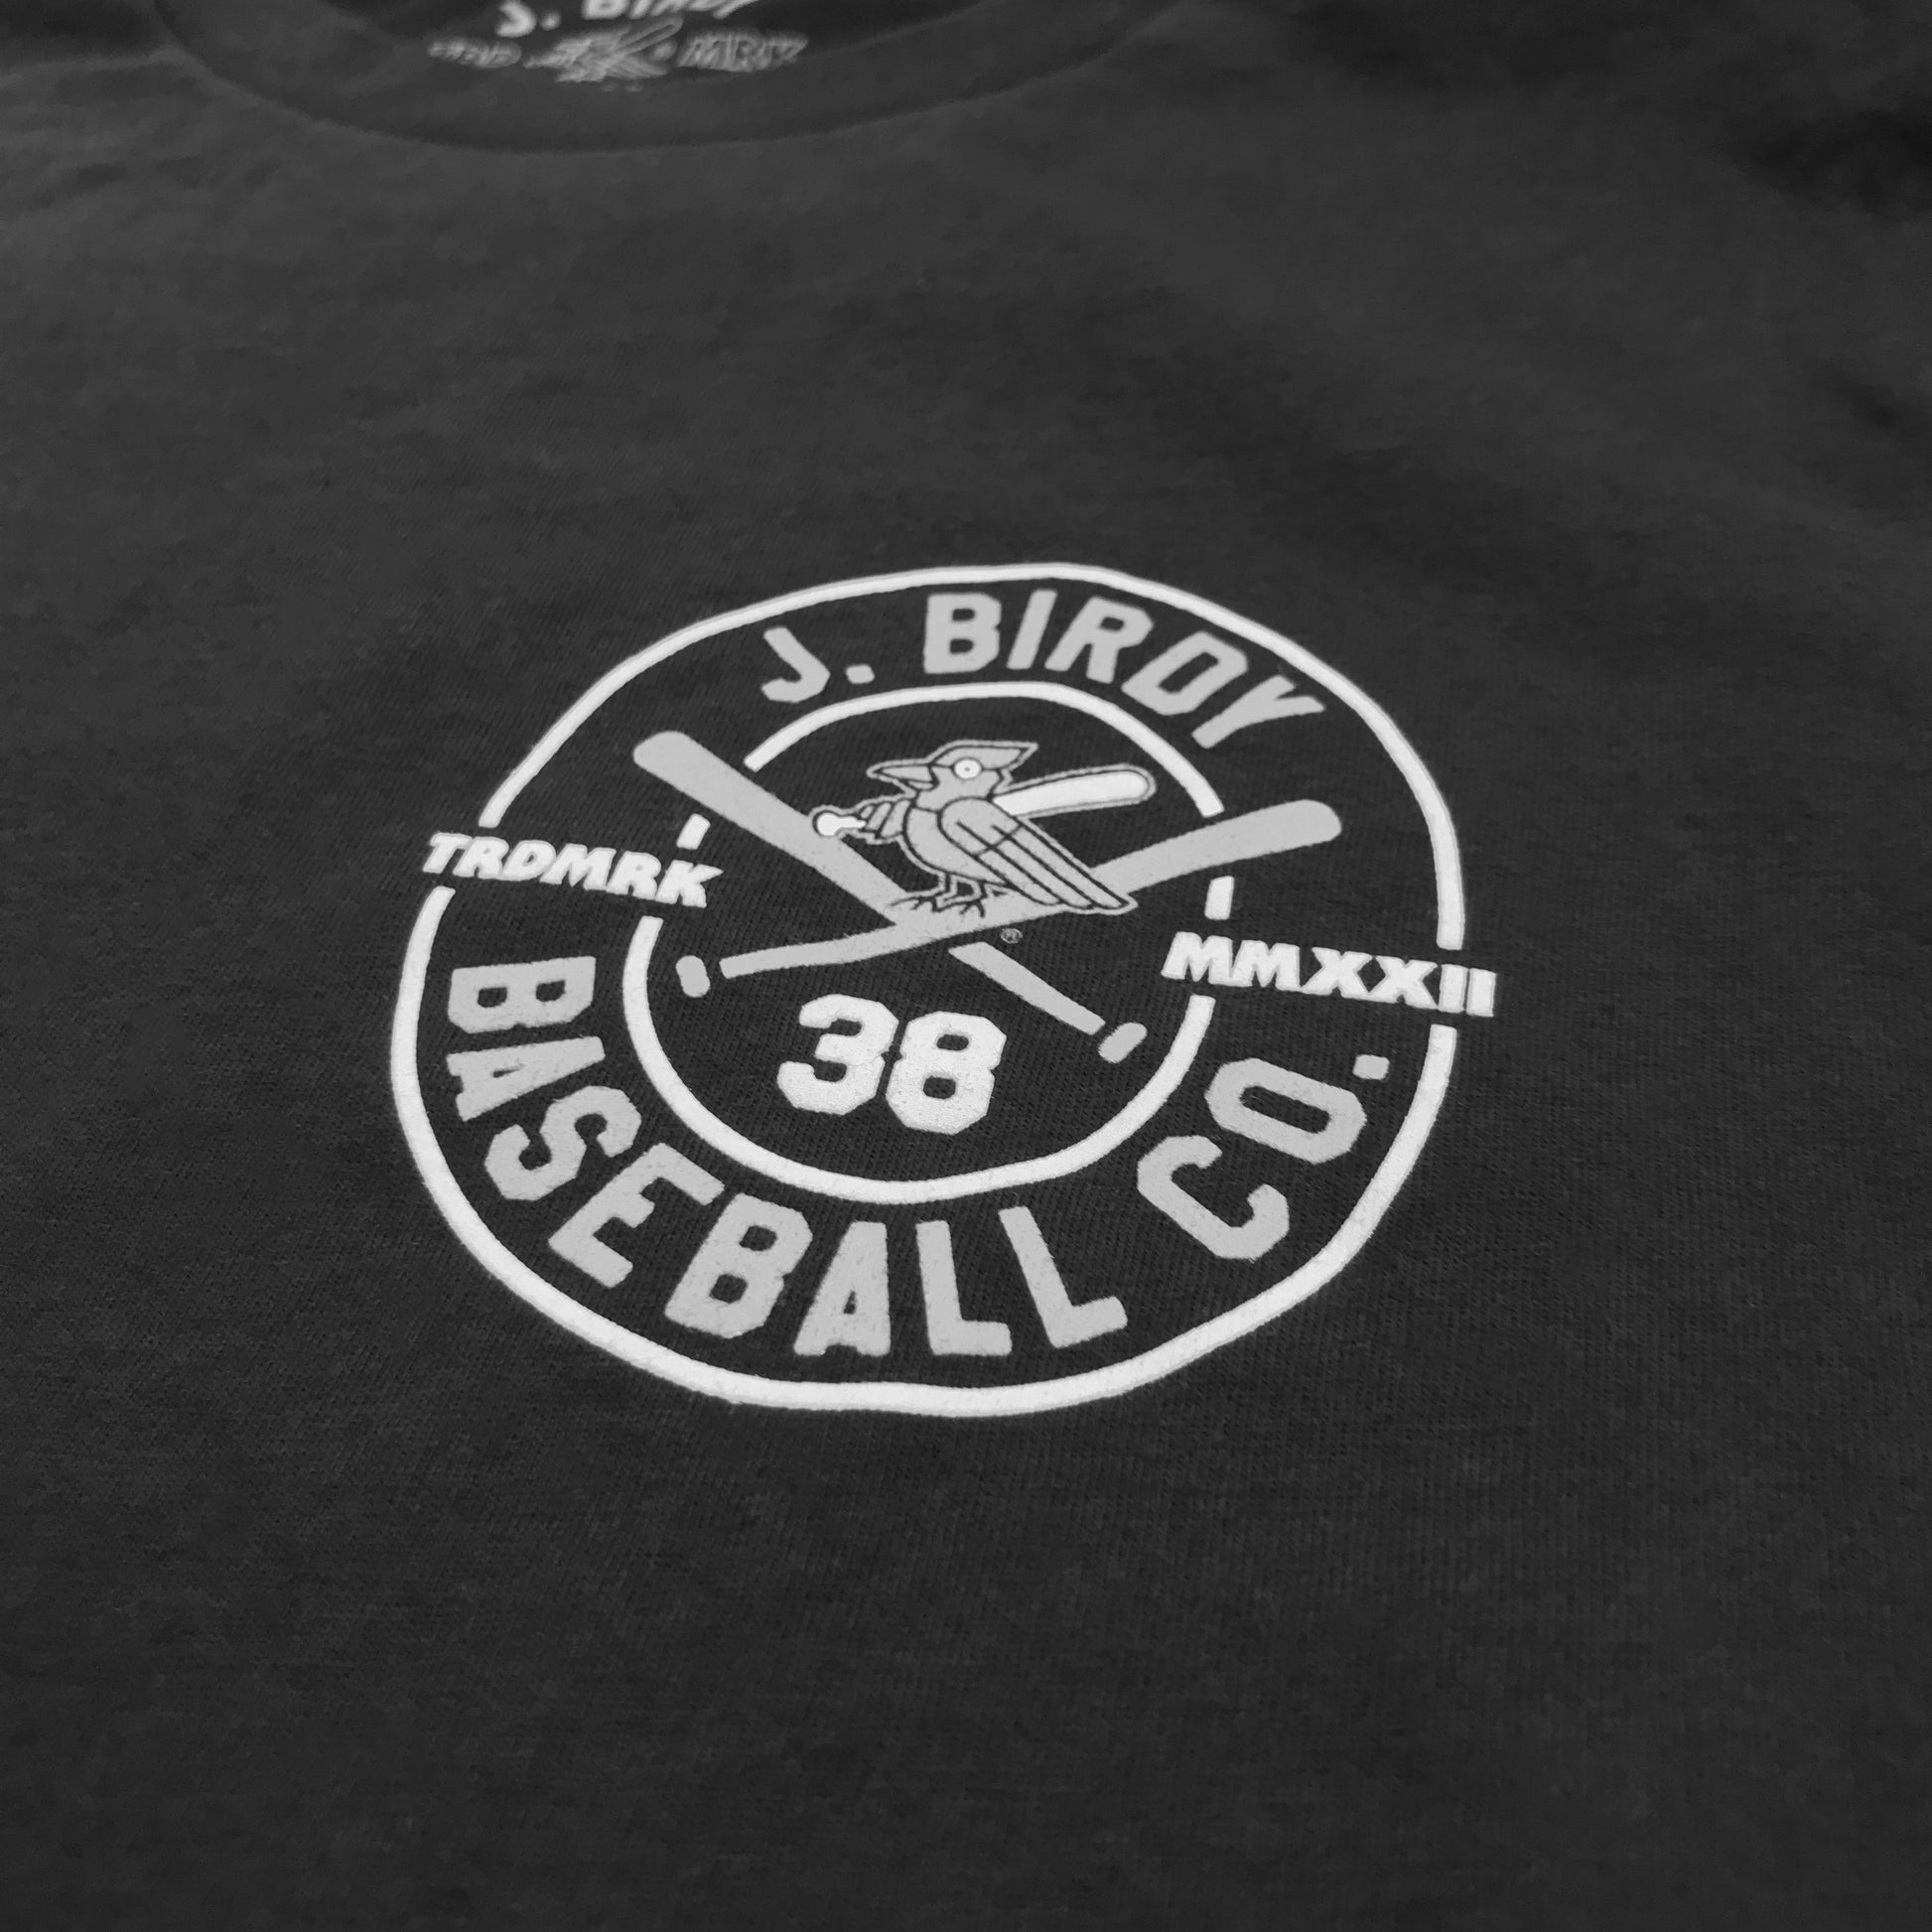 JBIRDY-Canadian-Baseball-Black-Trademark-Tshirt